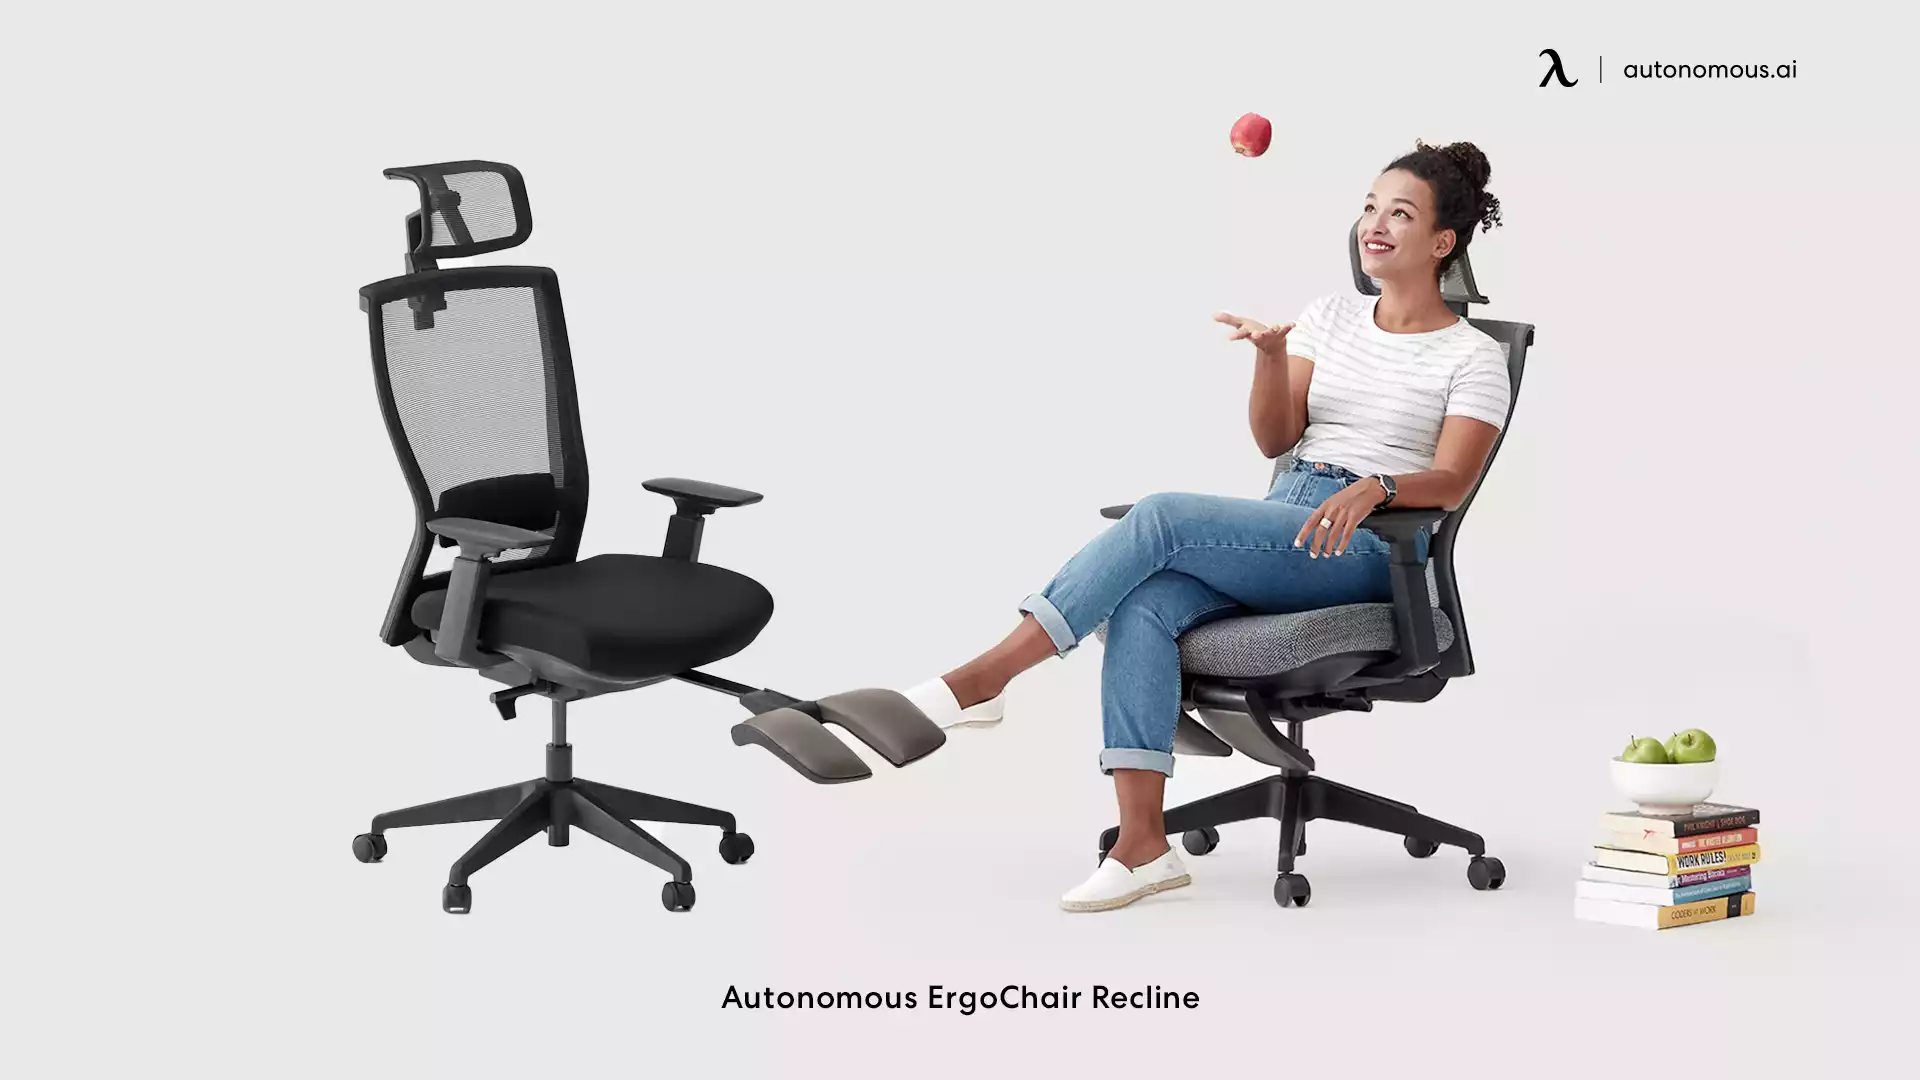 ErgoChair Recline modern comfort chair